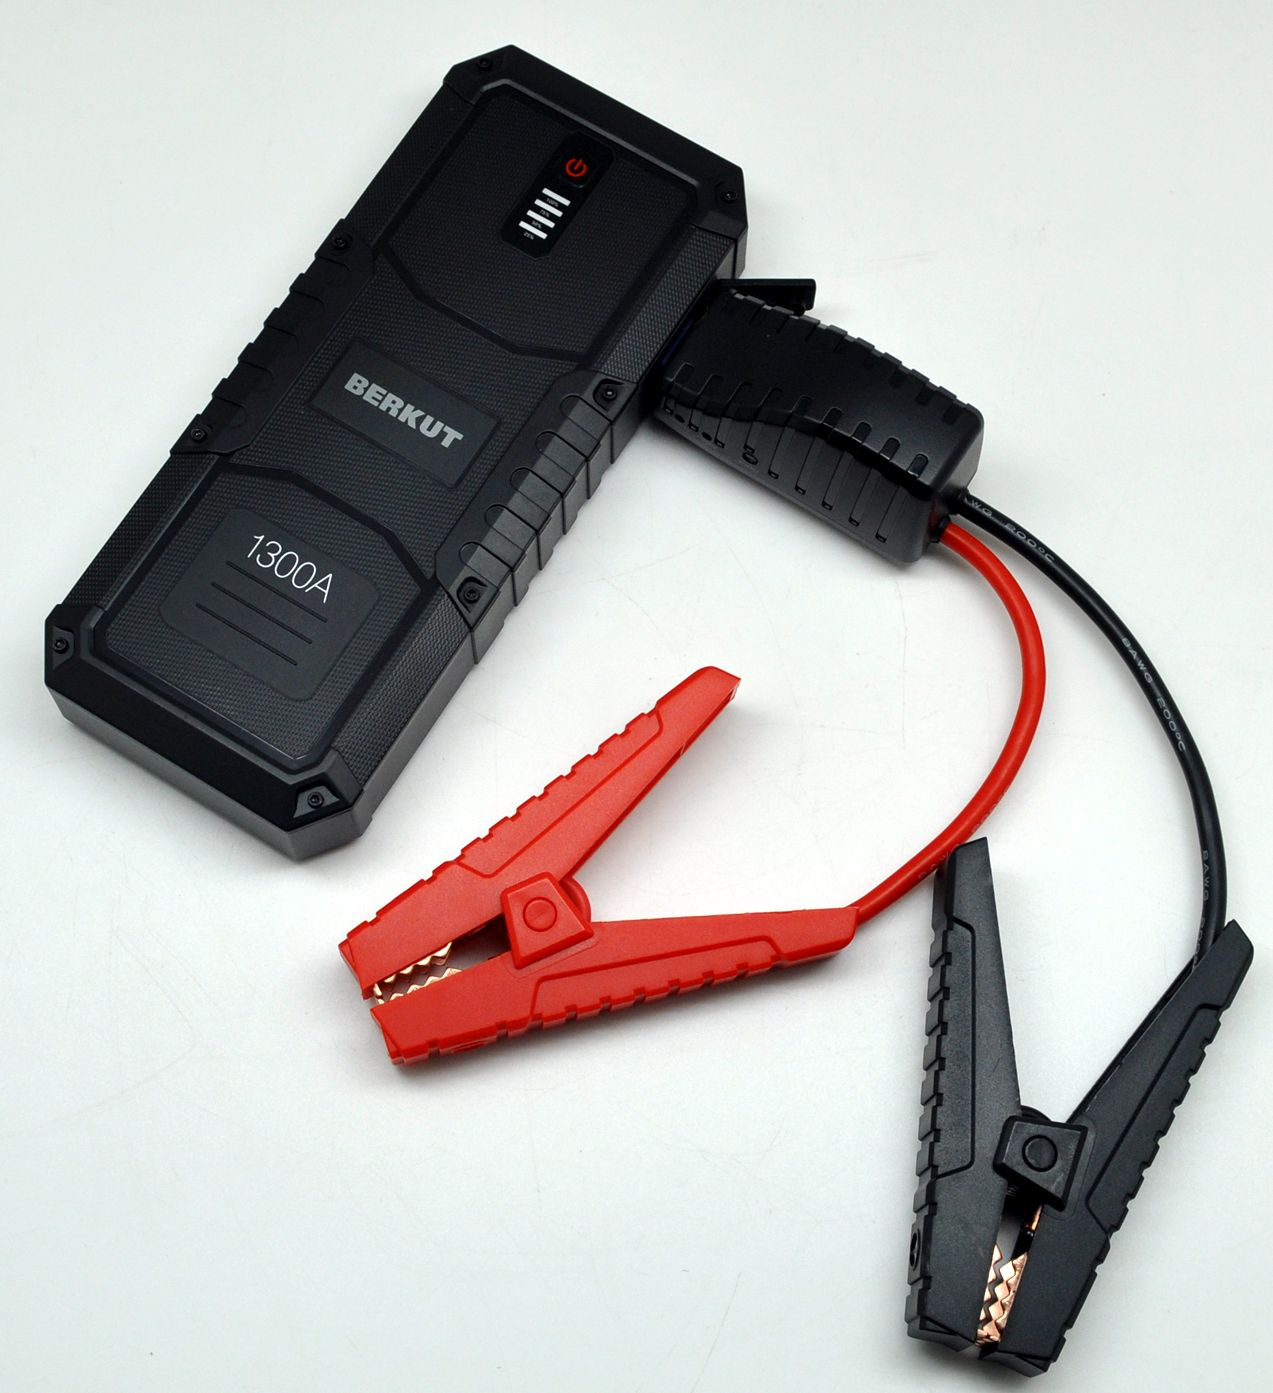 Пуско-зарядное устройство Berkut JSL-25000